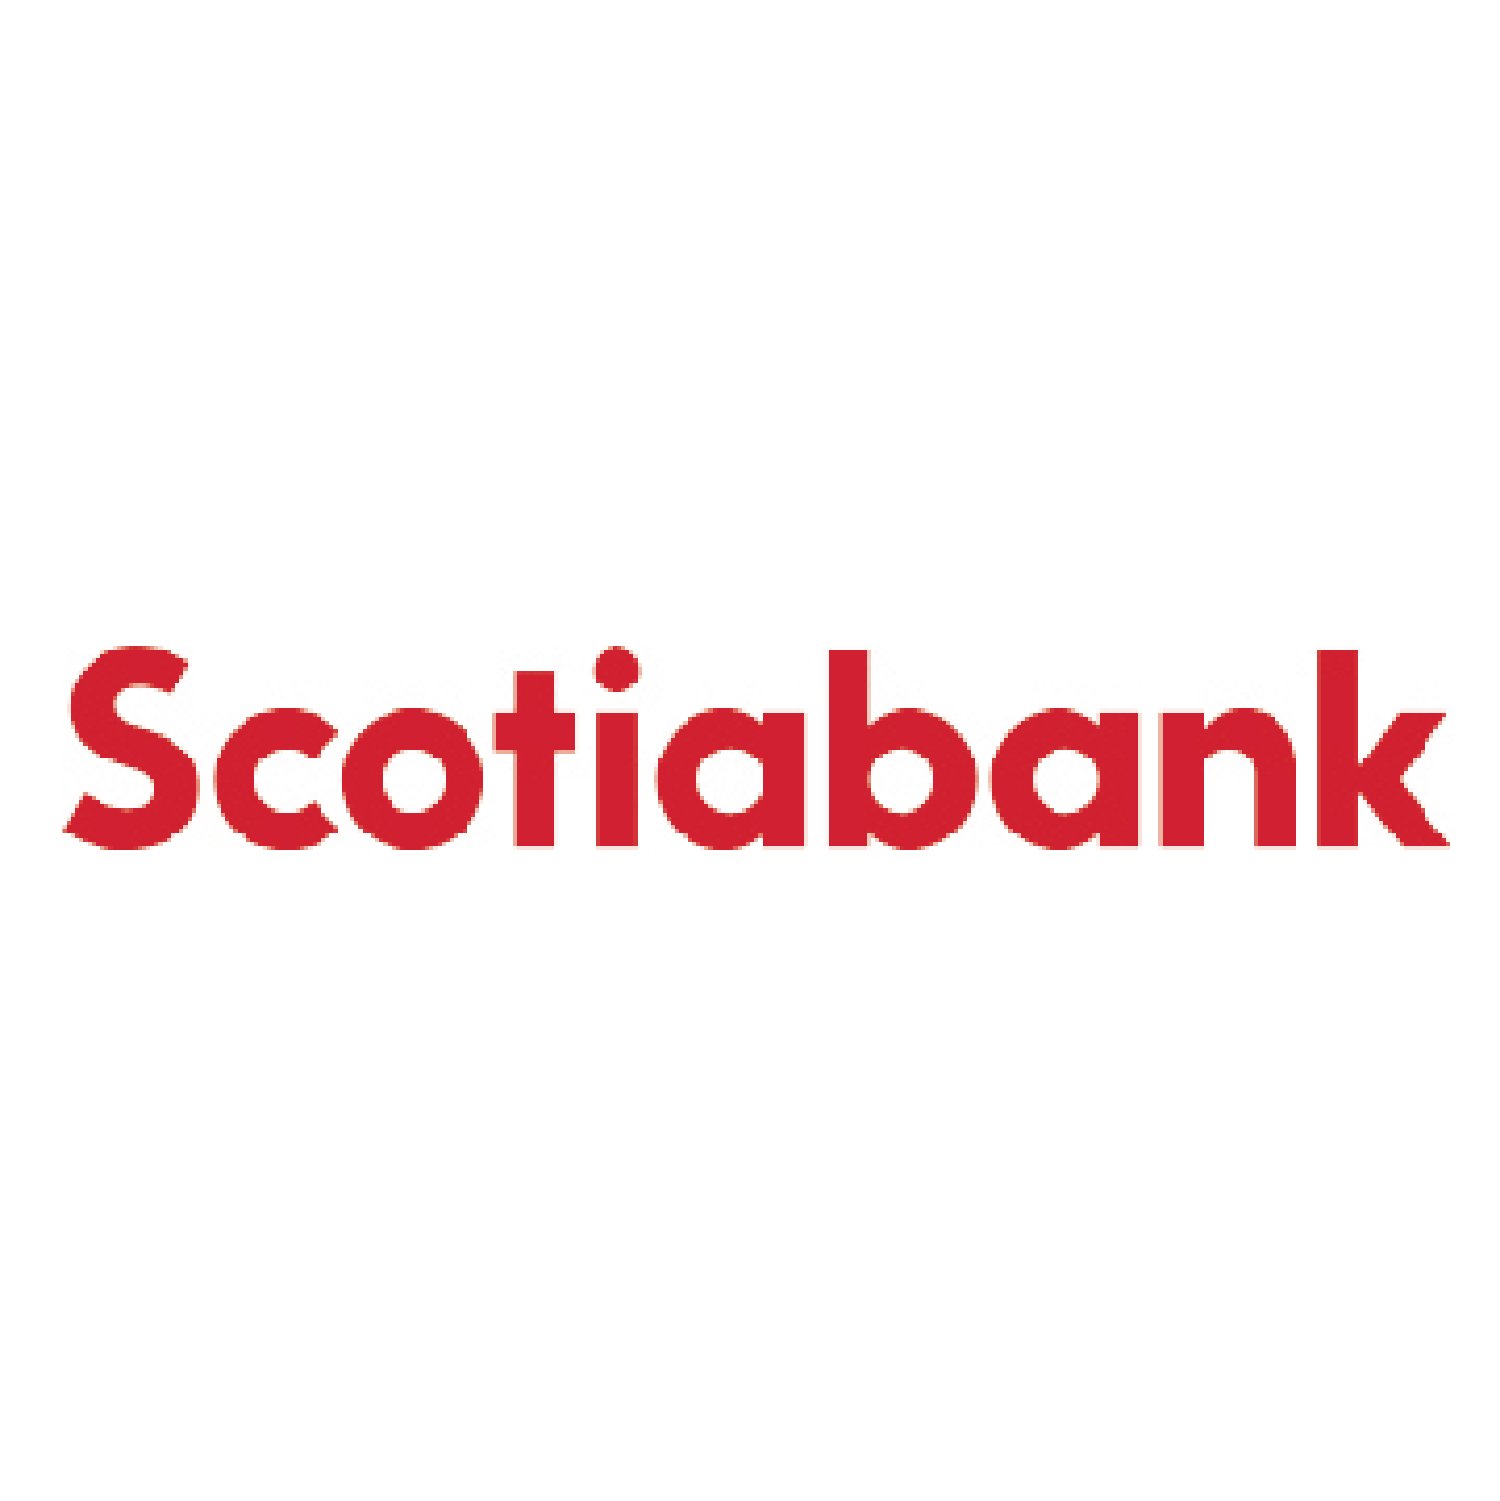 scotiabank-logo.jpg